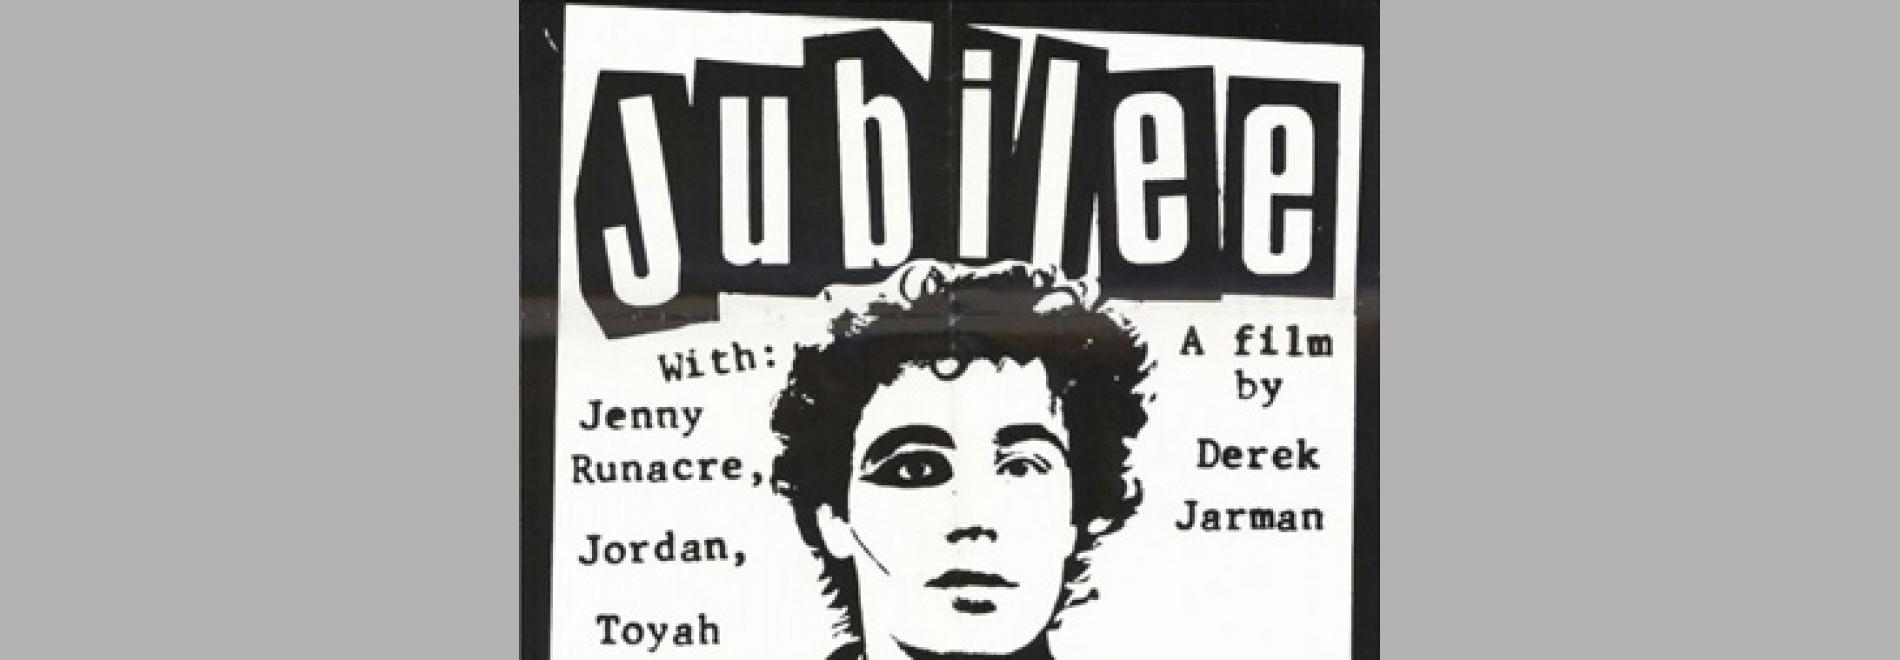 Jubilee (Derek Jarman, 1978)